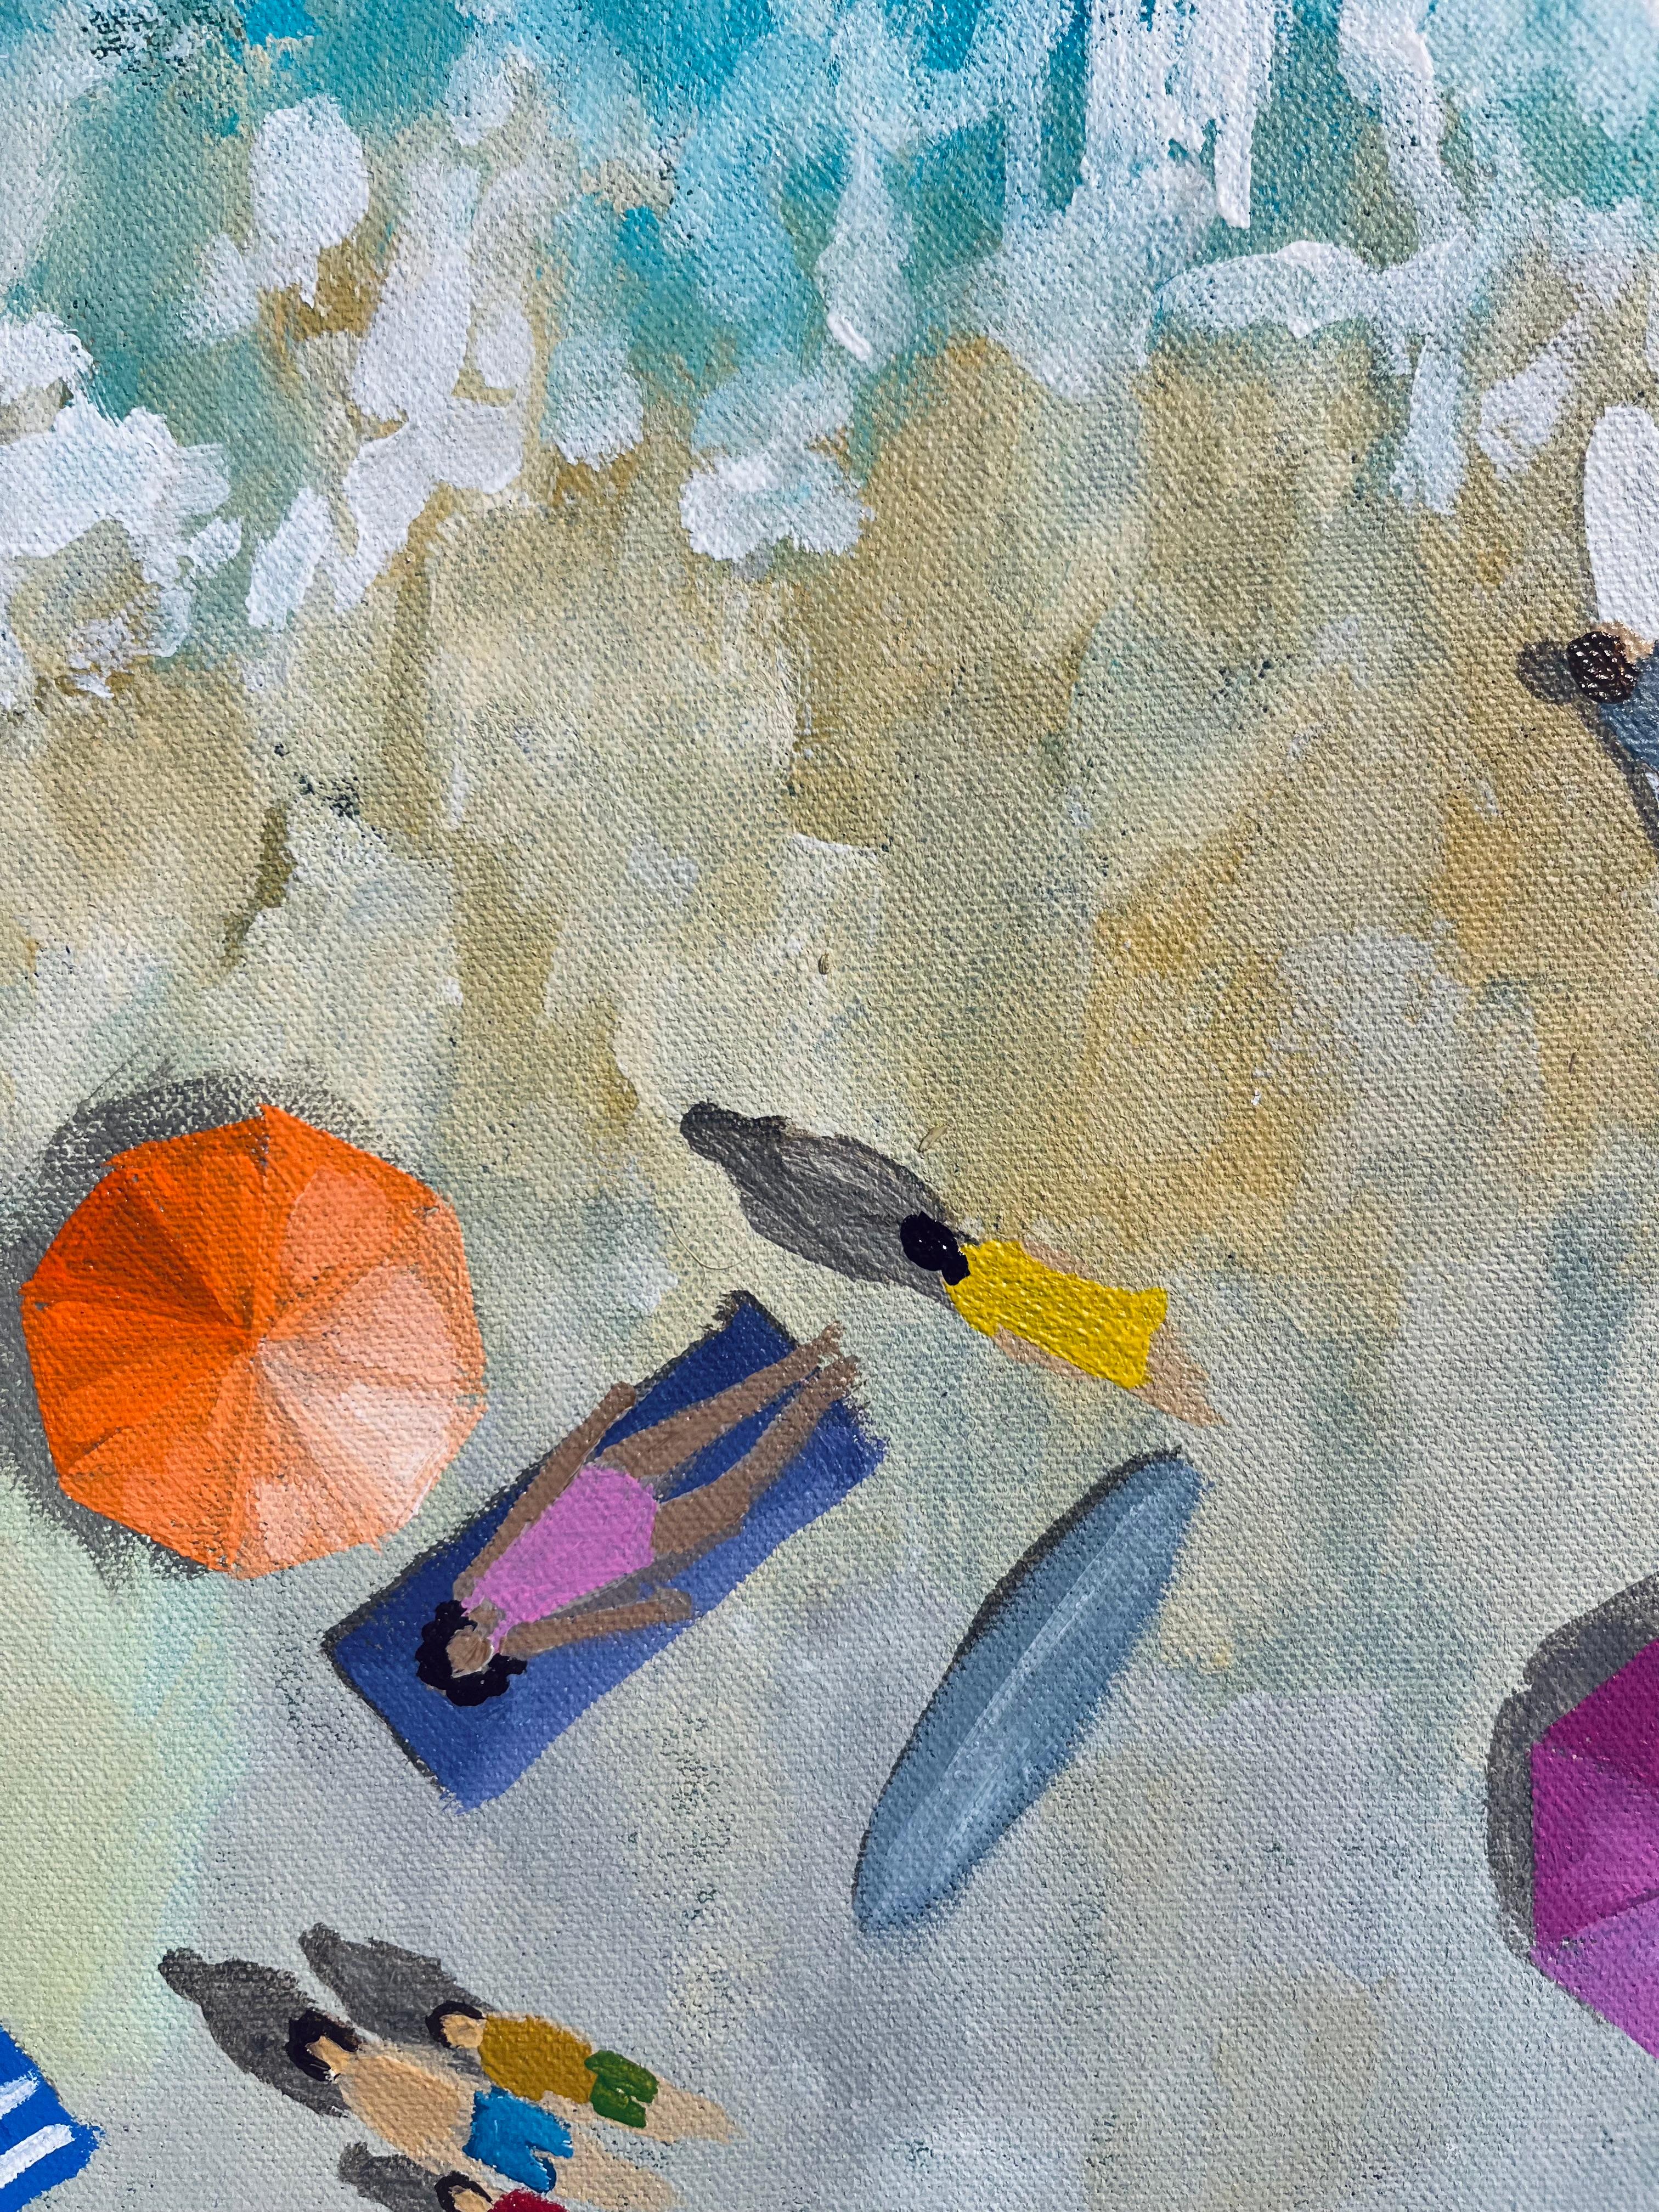 Gentle Waters-original impressionnisme océanique peinture de paysage marin-art contemporain en vente 2